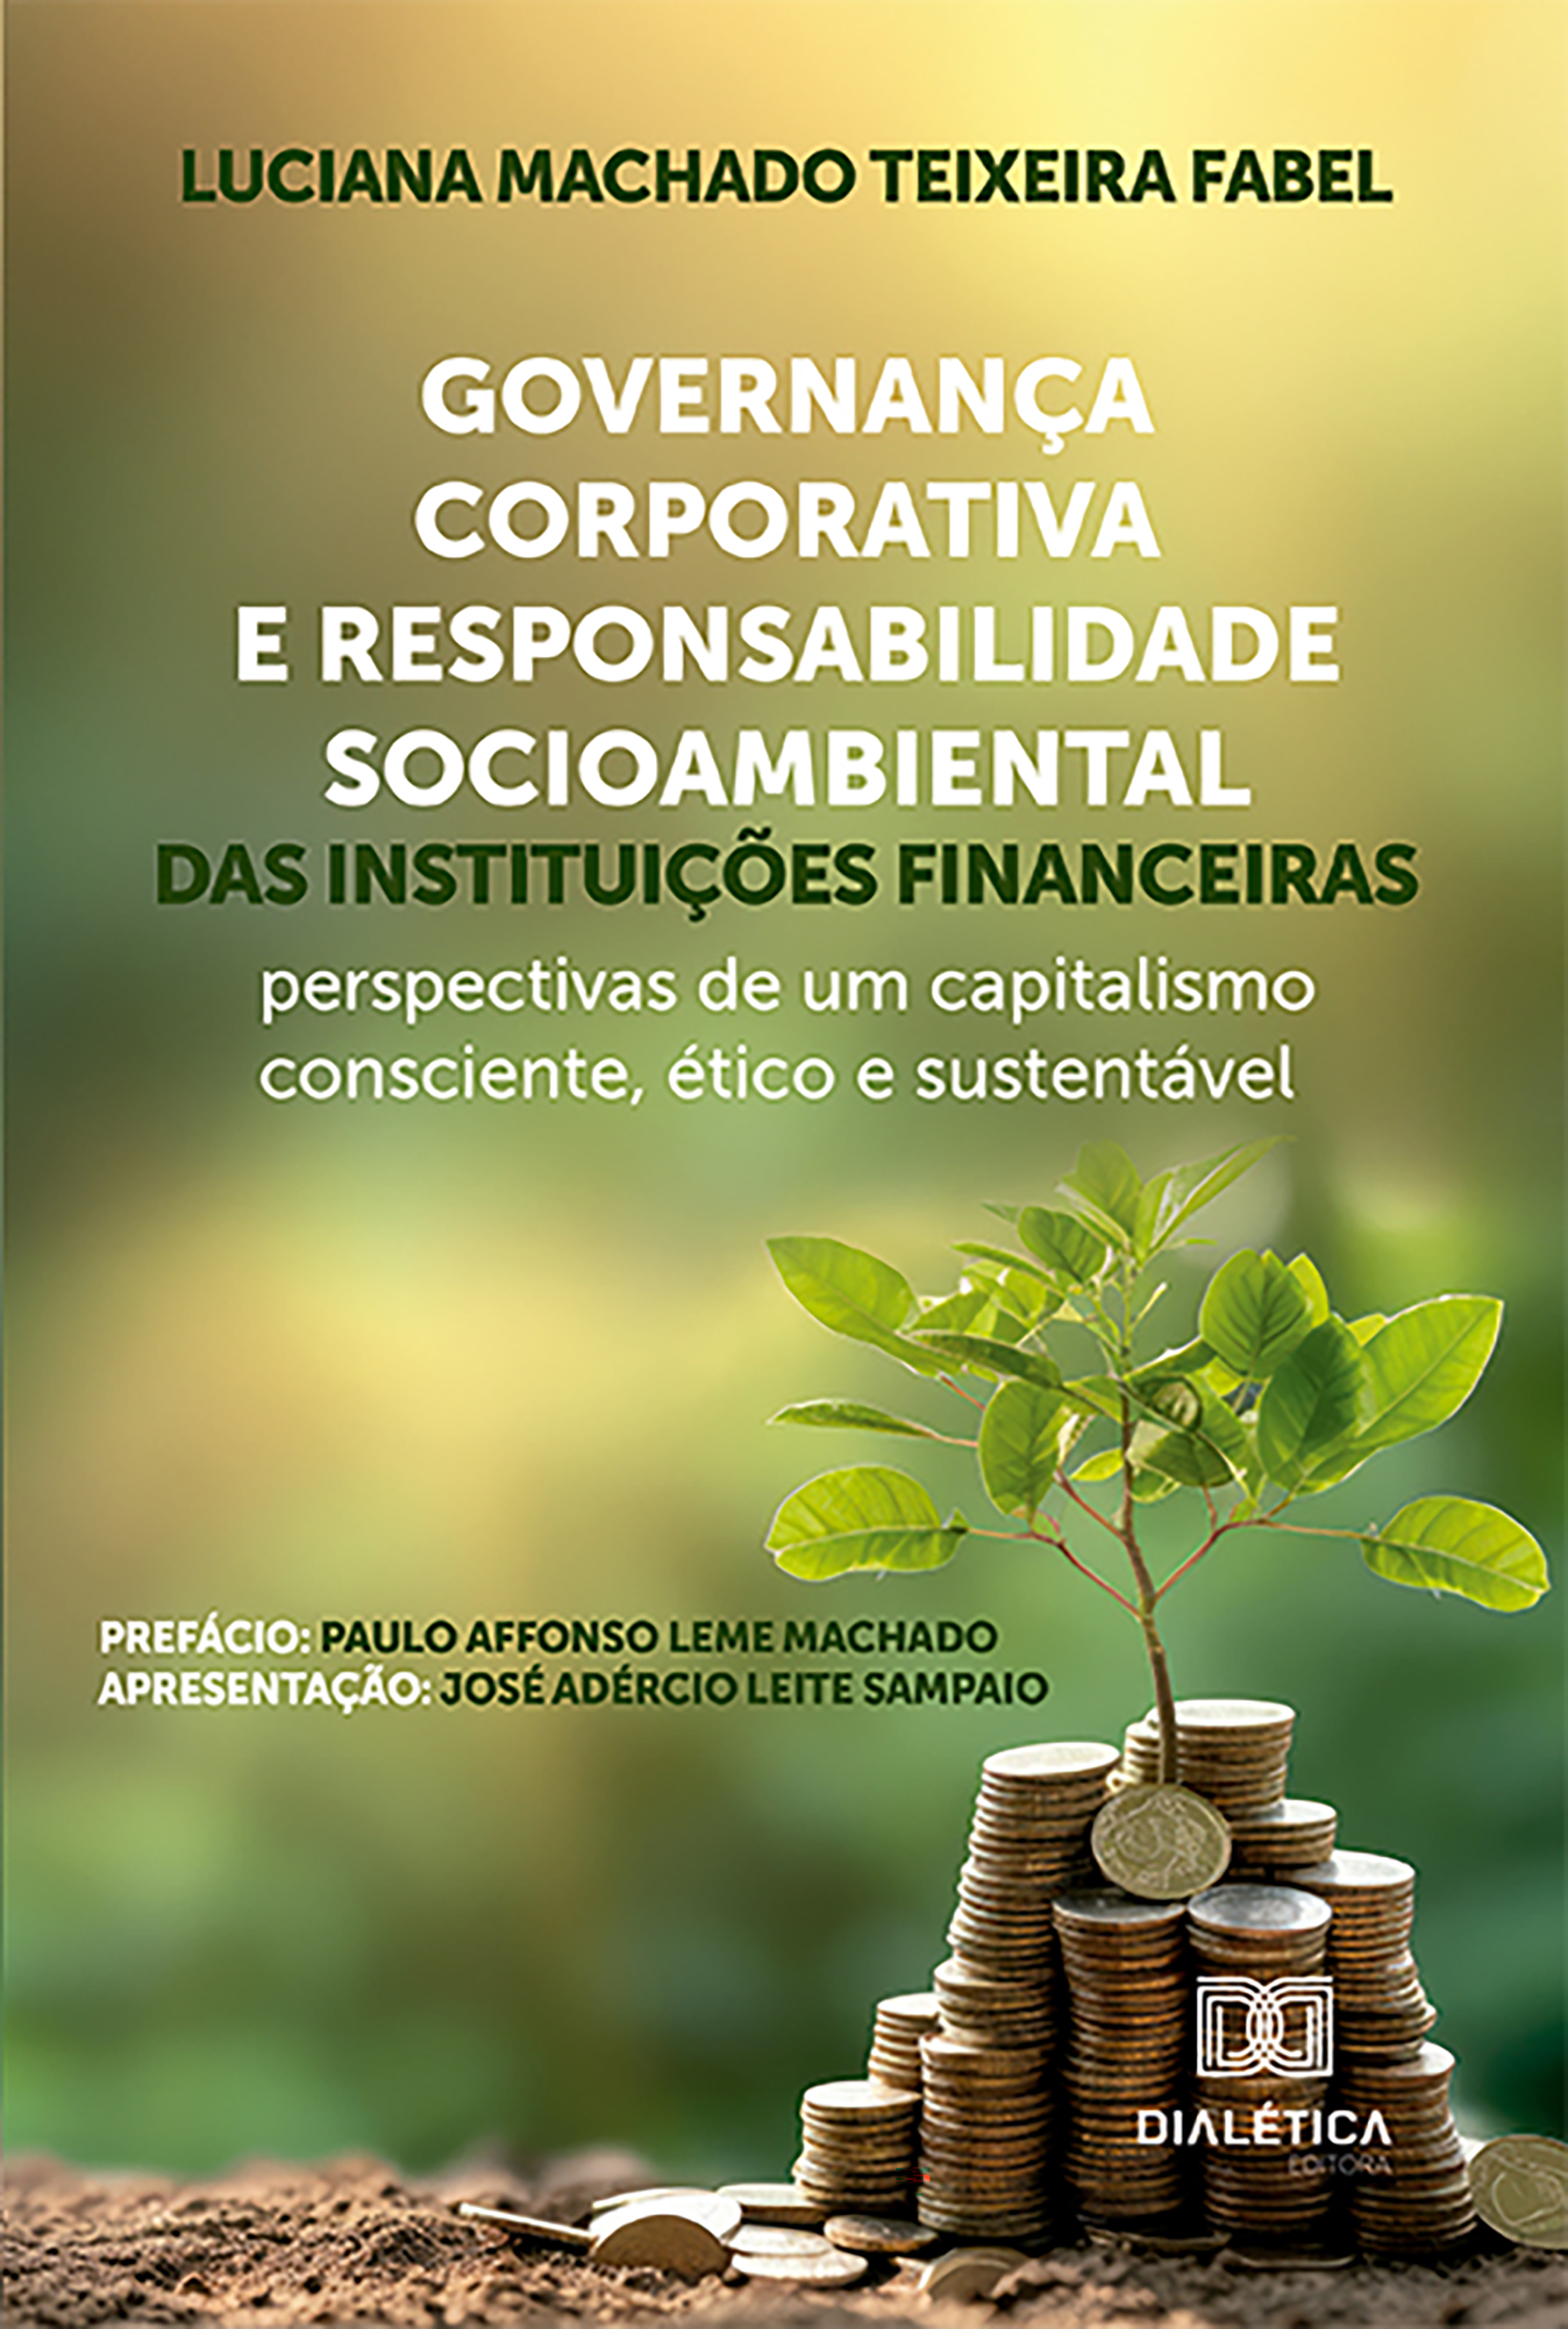 Governança Corporativa e Responsabilidade Socioambiental das instituições financeiras